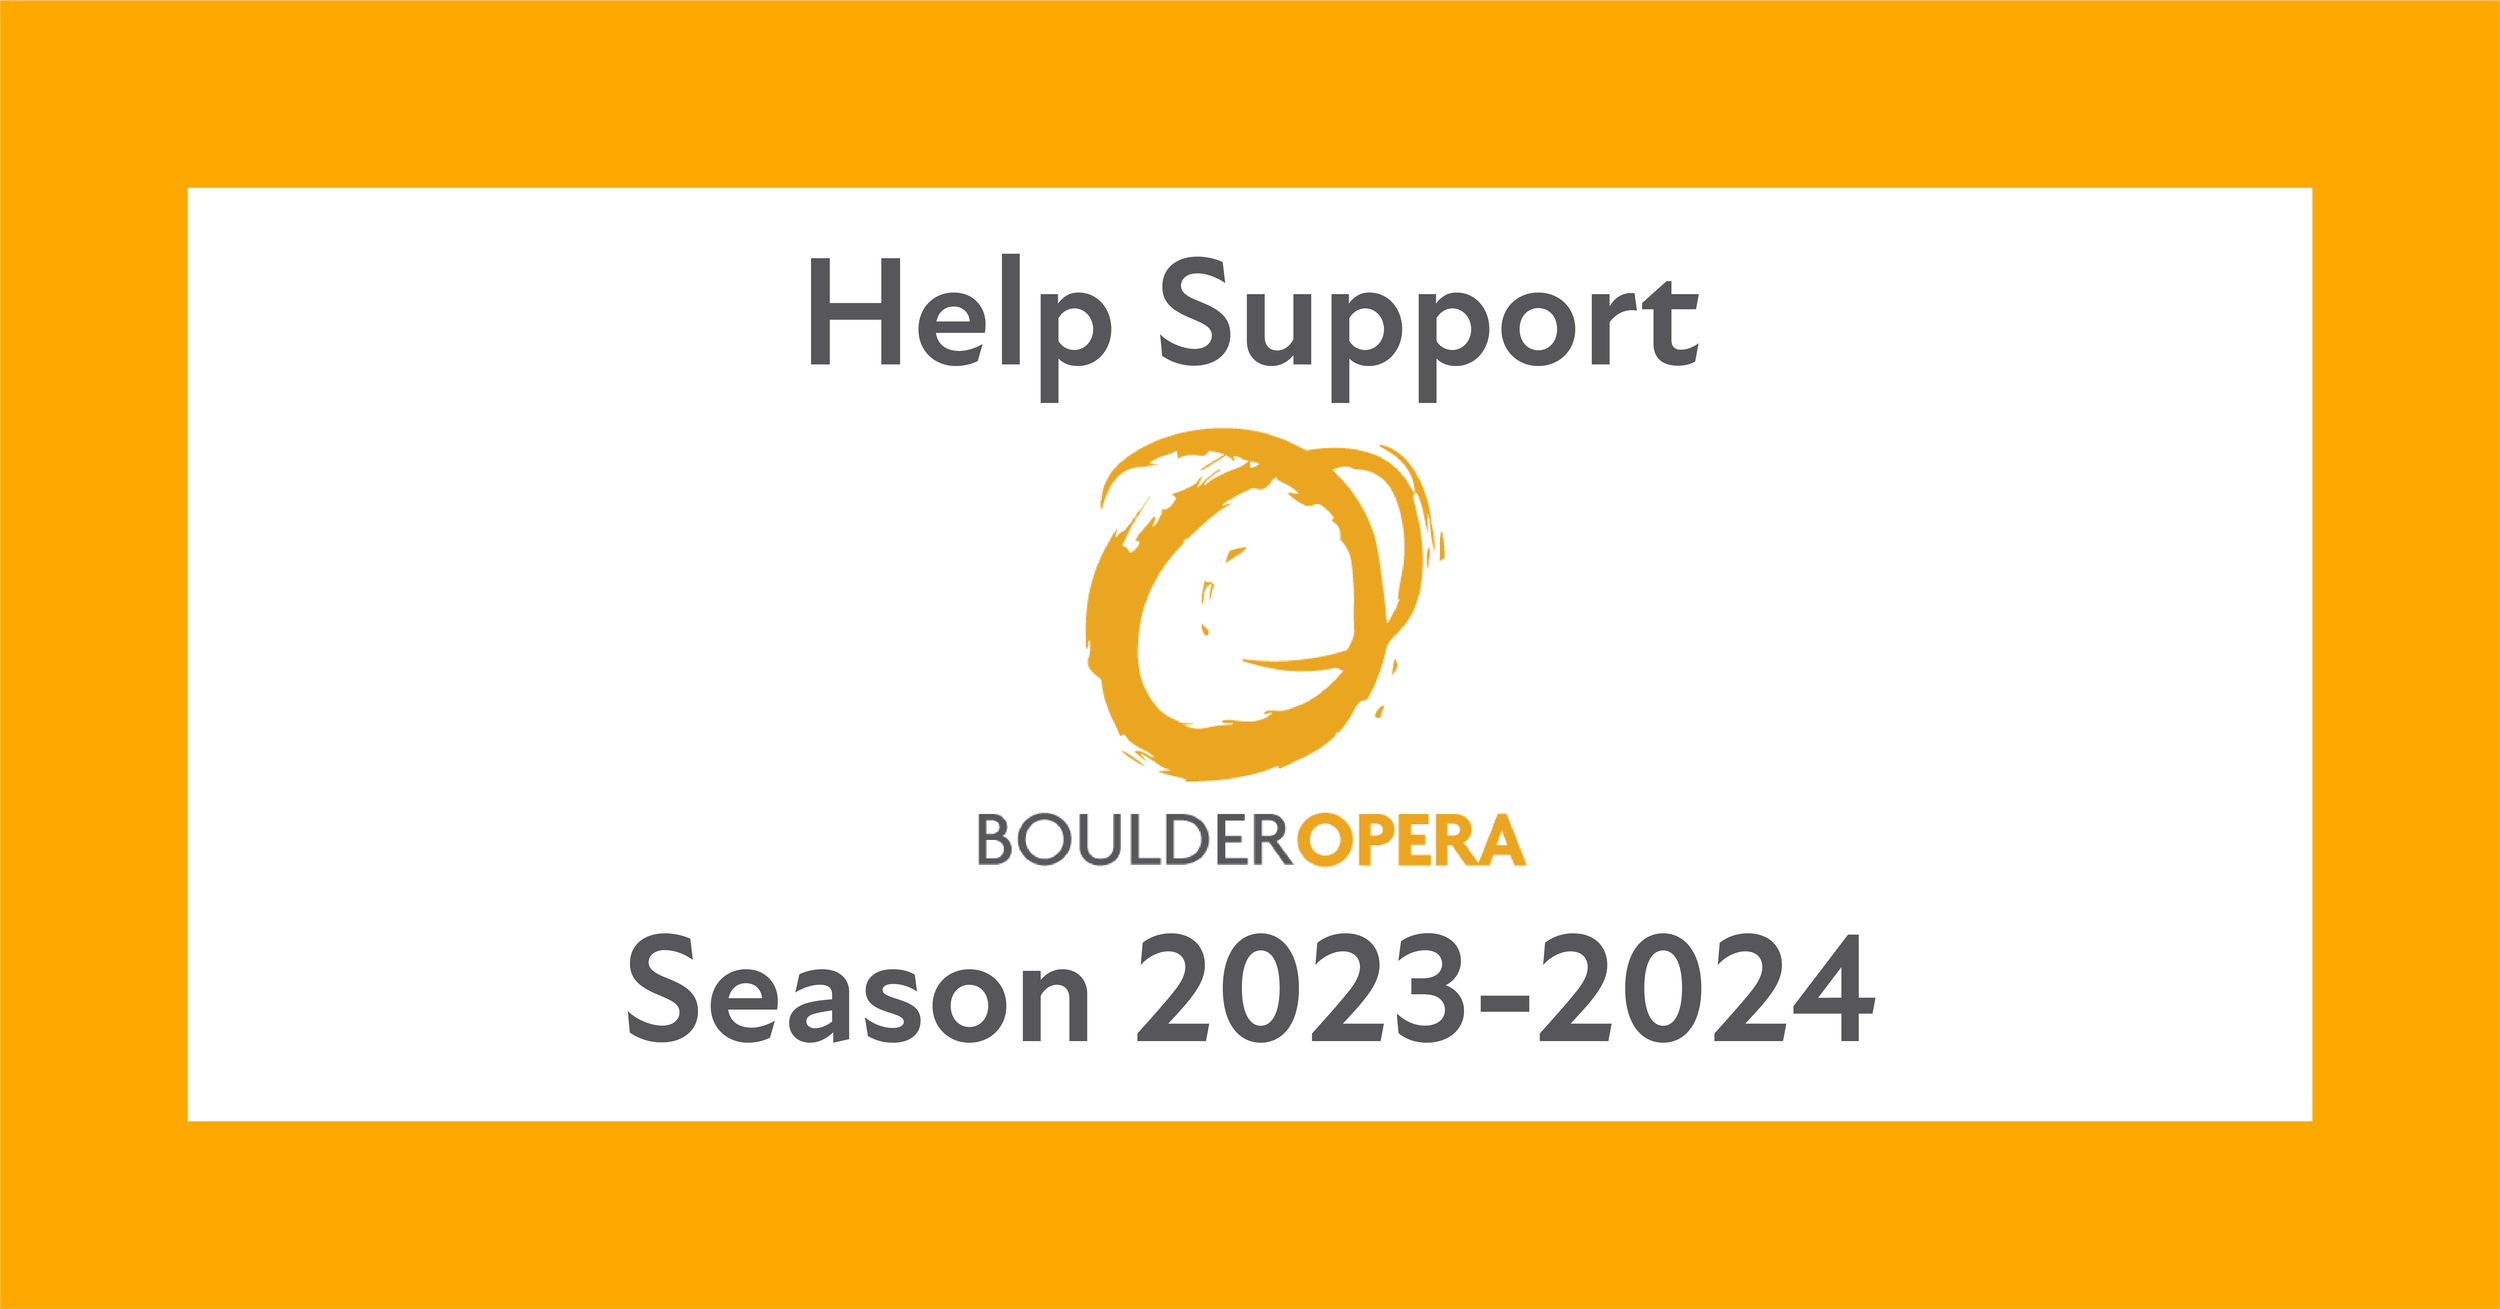 Help make our 2023-2024 season magical!